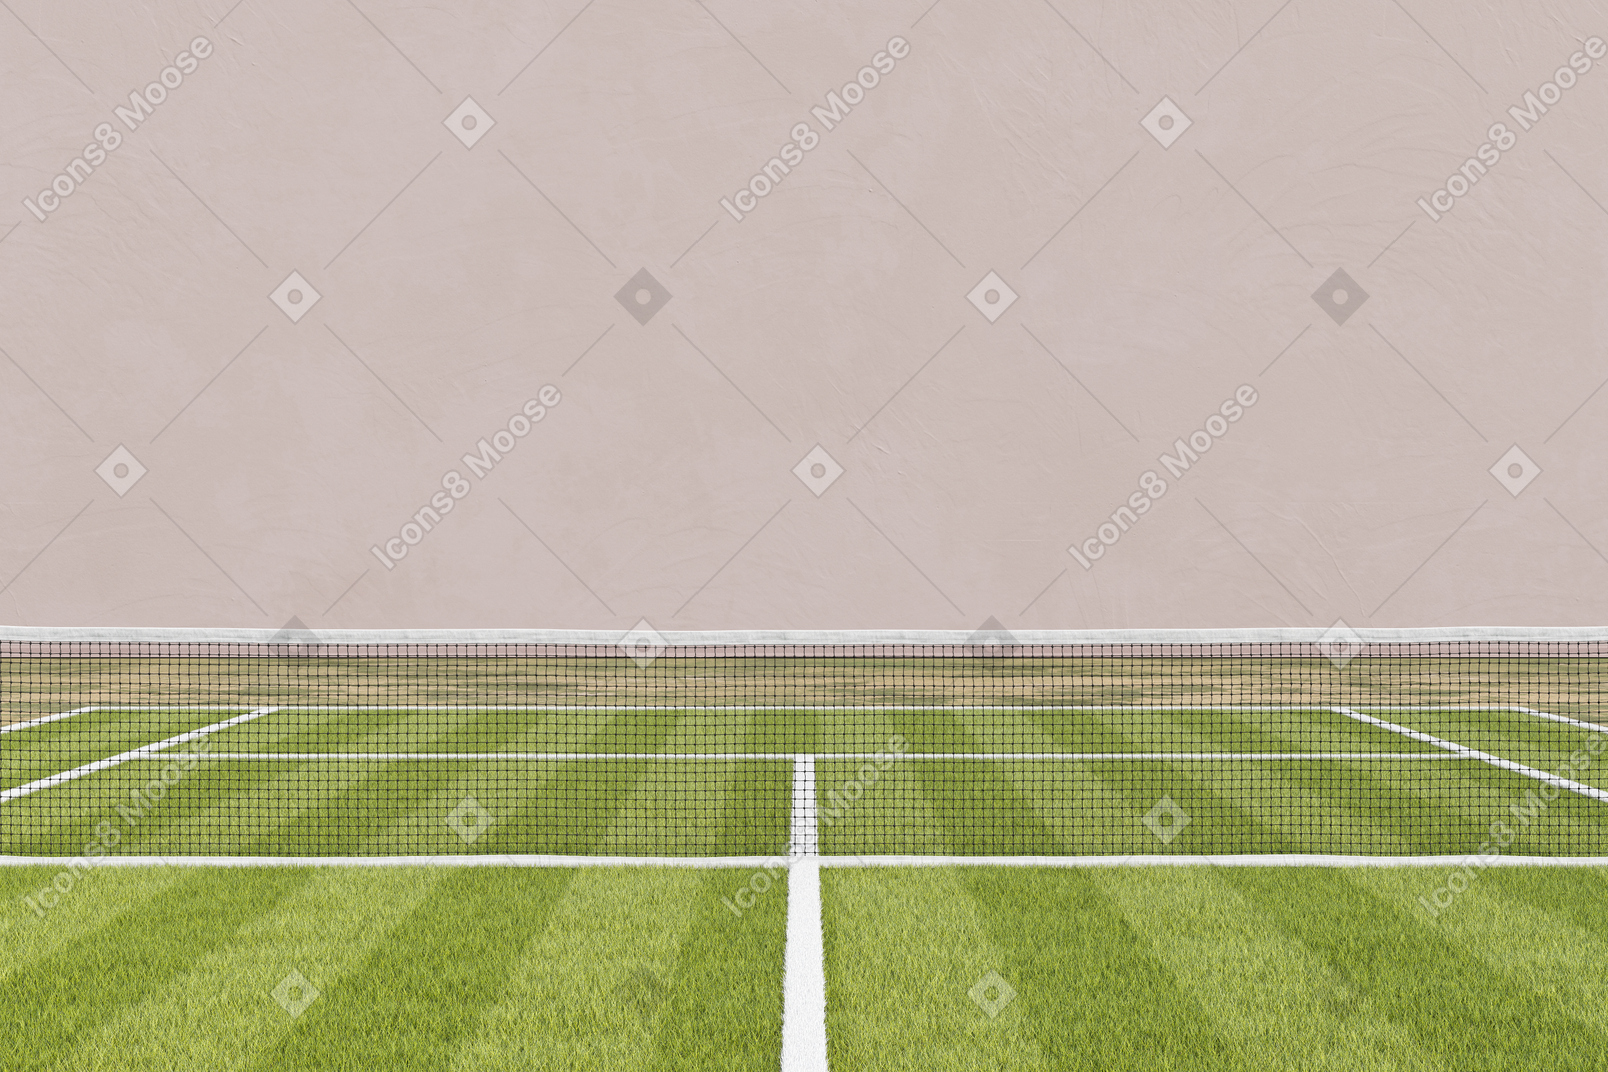 Cancha de tenis de hierba con una red de tenis